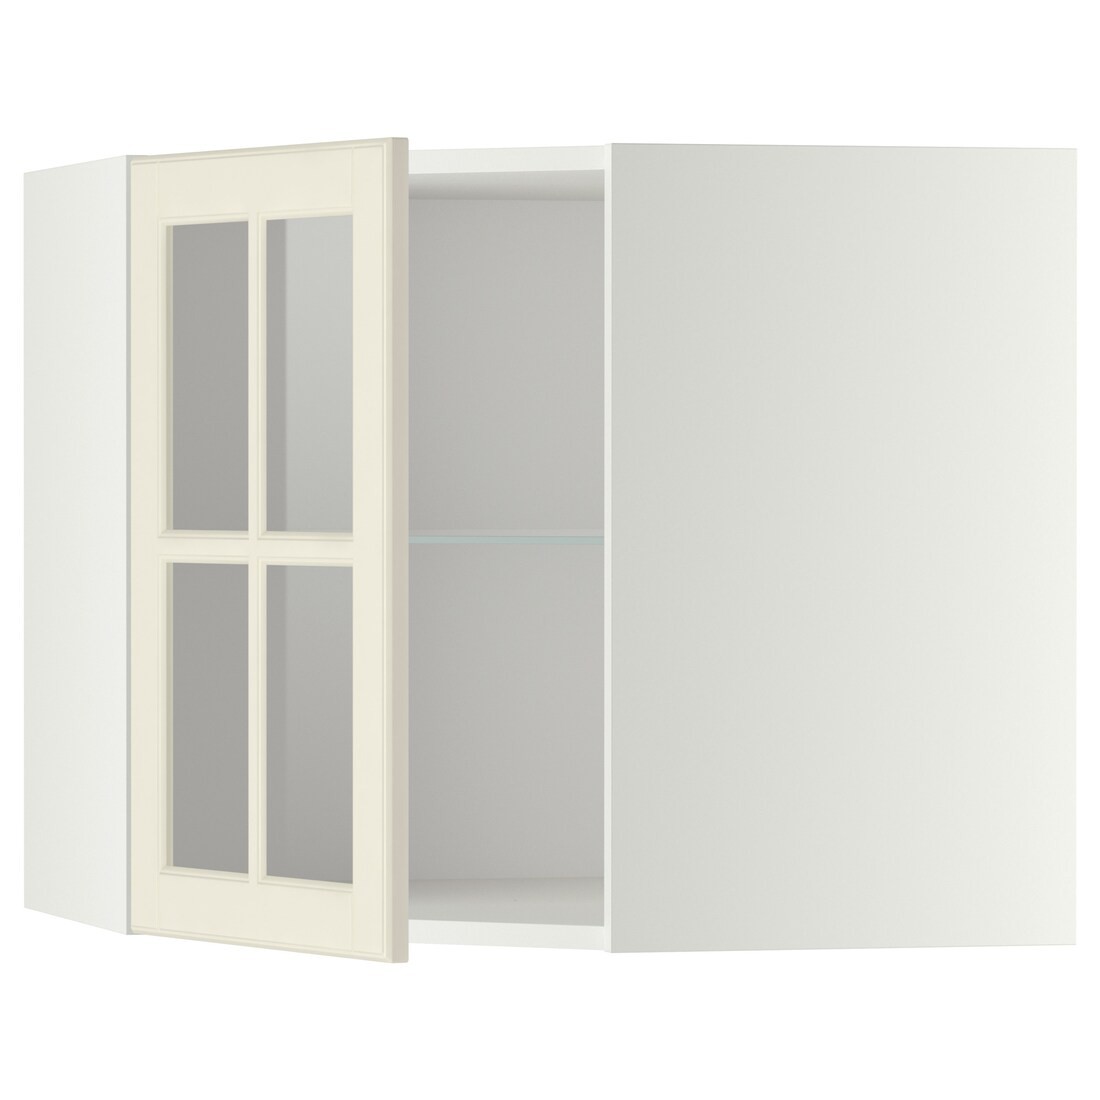 METOD МЕТОД Кутова настінна шафа з полицями / скляні двері, білий / Bodbyn кремовий, 68x60 см